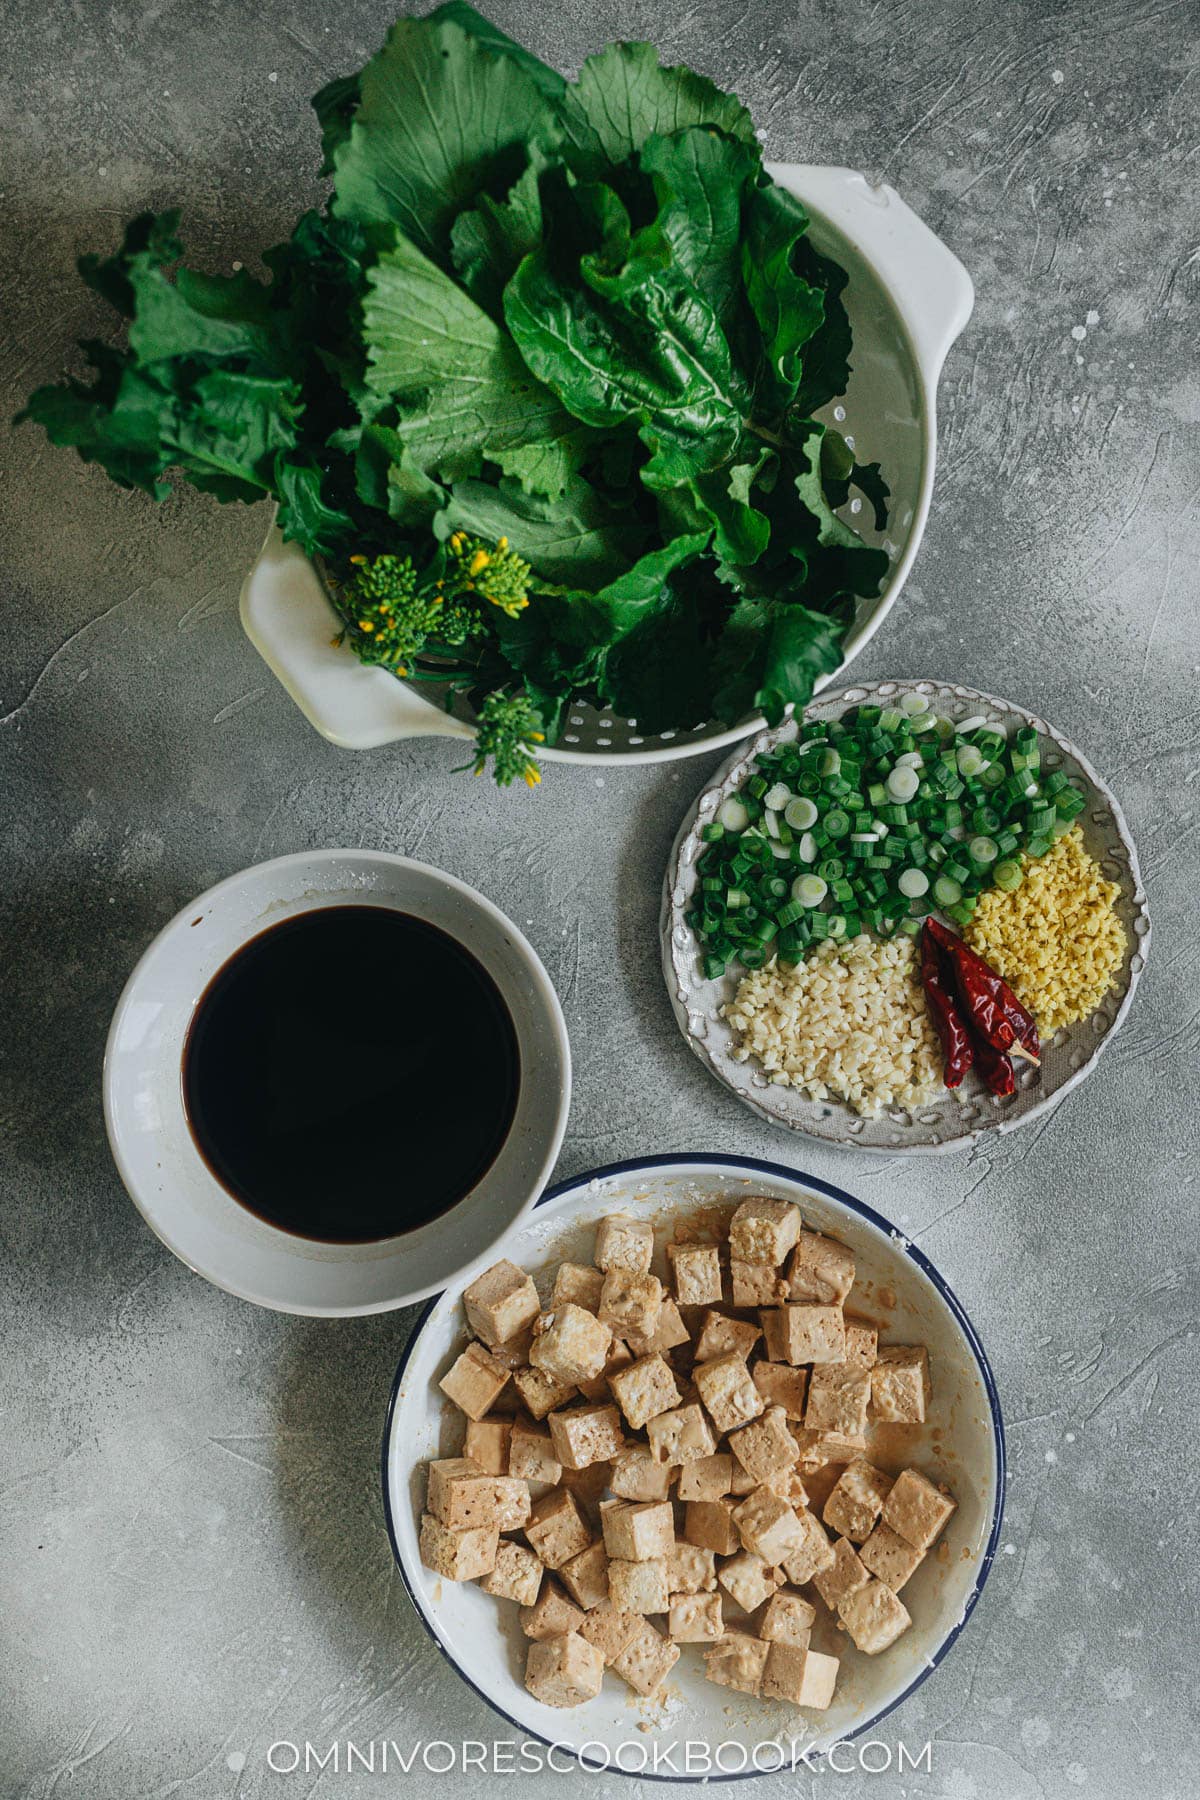 Ingredients for making General Tso Tofu